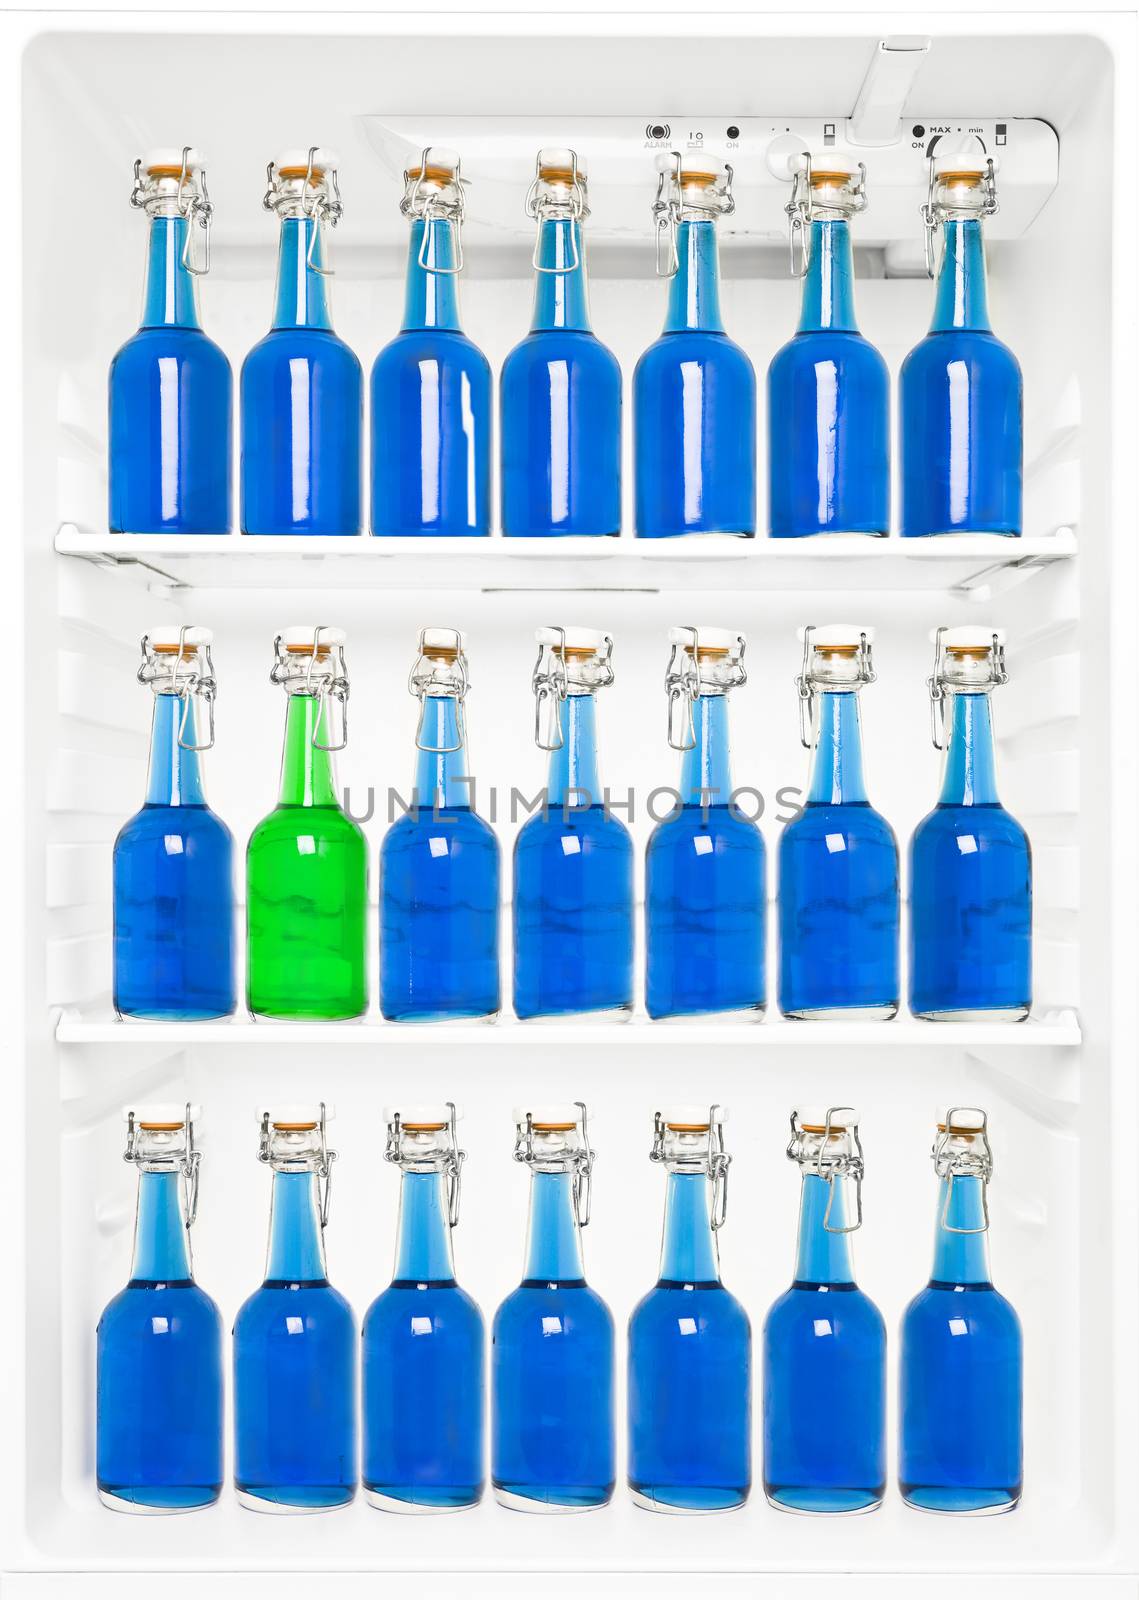 Bottles in a fridge by gemenacom